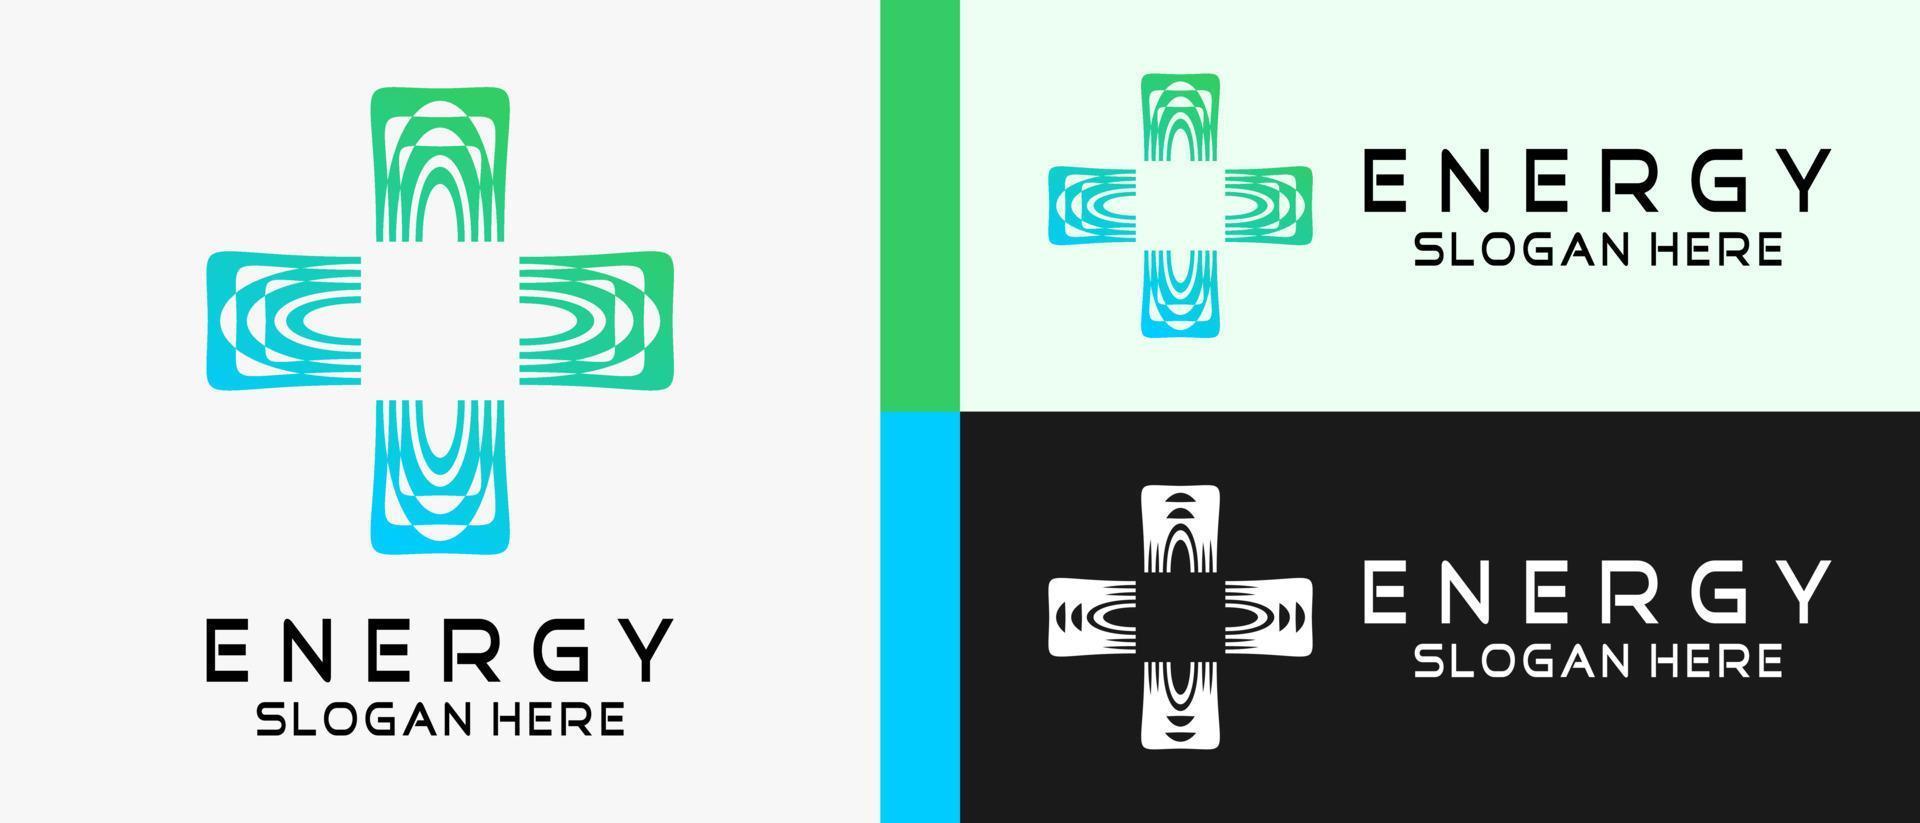 plantilla de diseño de logotipo de energía con concepto de elemento abstracto creativo en forma de cruz o signo más. ilustración de logotipo de vector premium